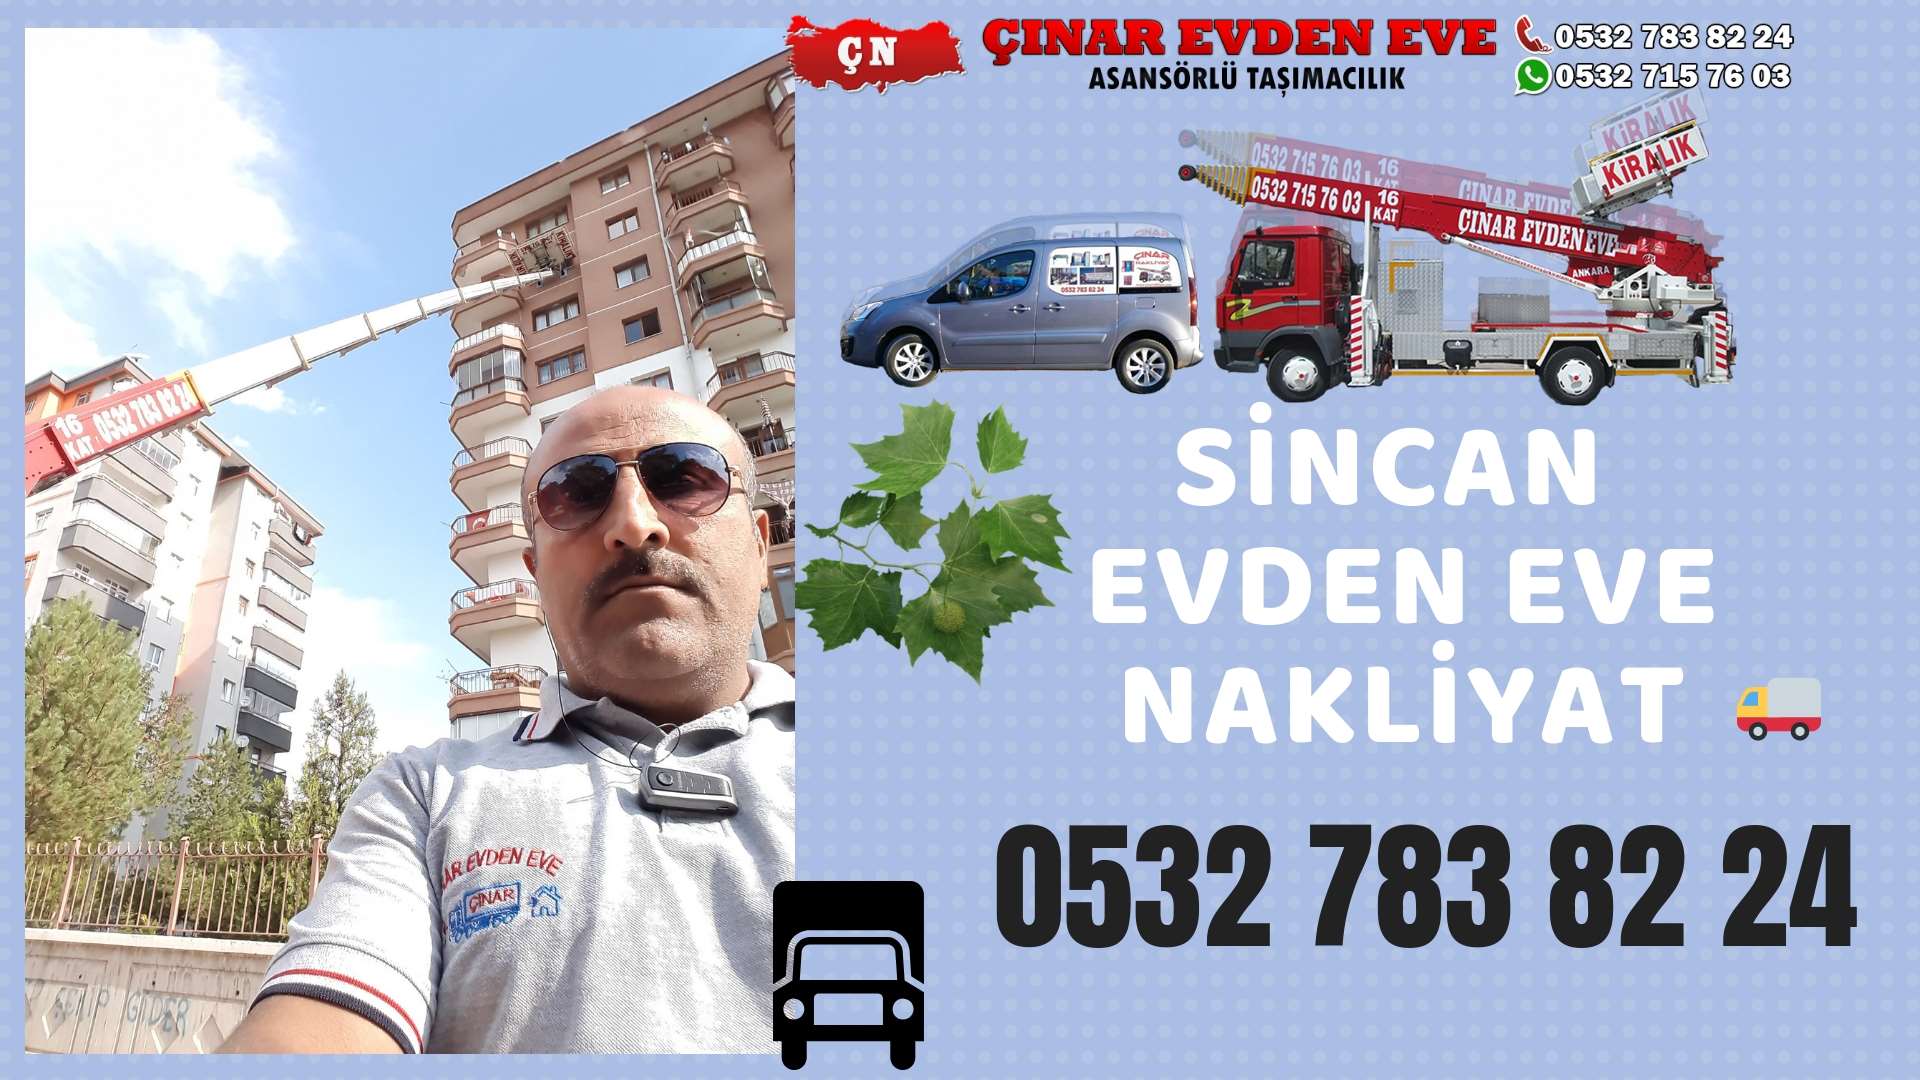 Ankara Batıkent Evden Eve Nakliyat, Asansörlü Taşımacılık, Ofis / İş Yeri Taşıma 0532 715 76 03